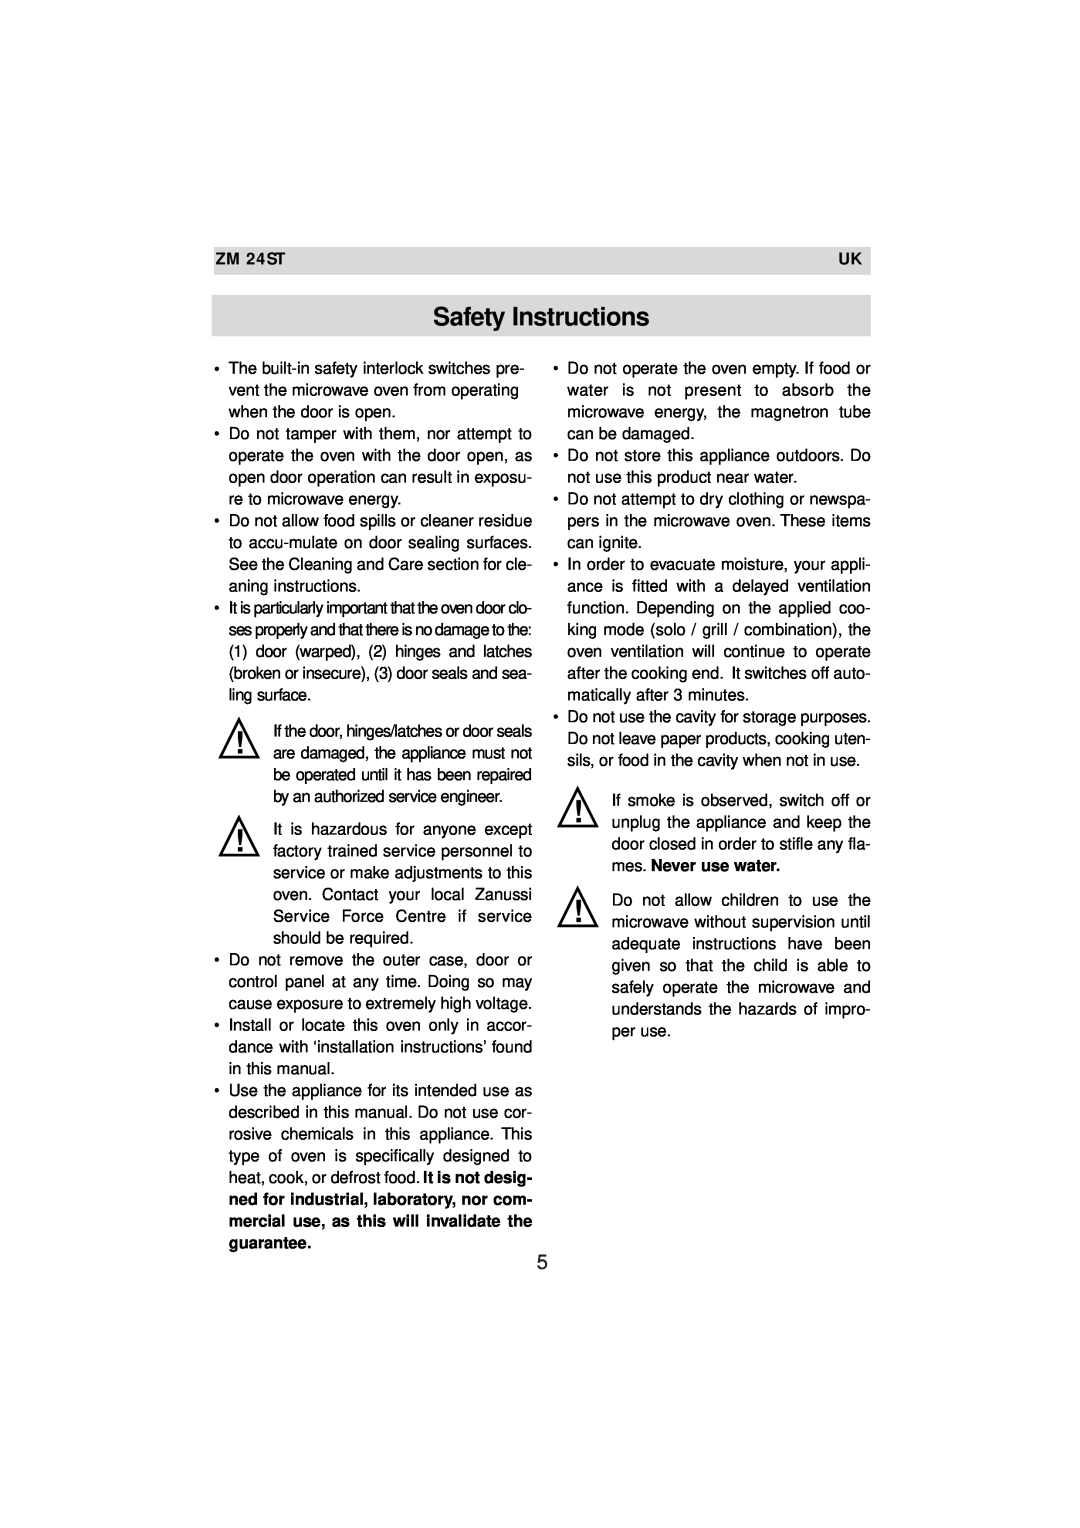 Zanussi ZM 24ST instruction manual Safety Instructions 